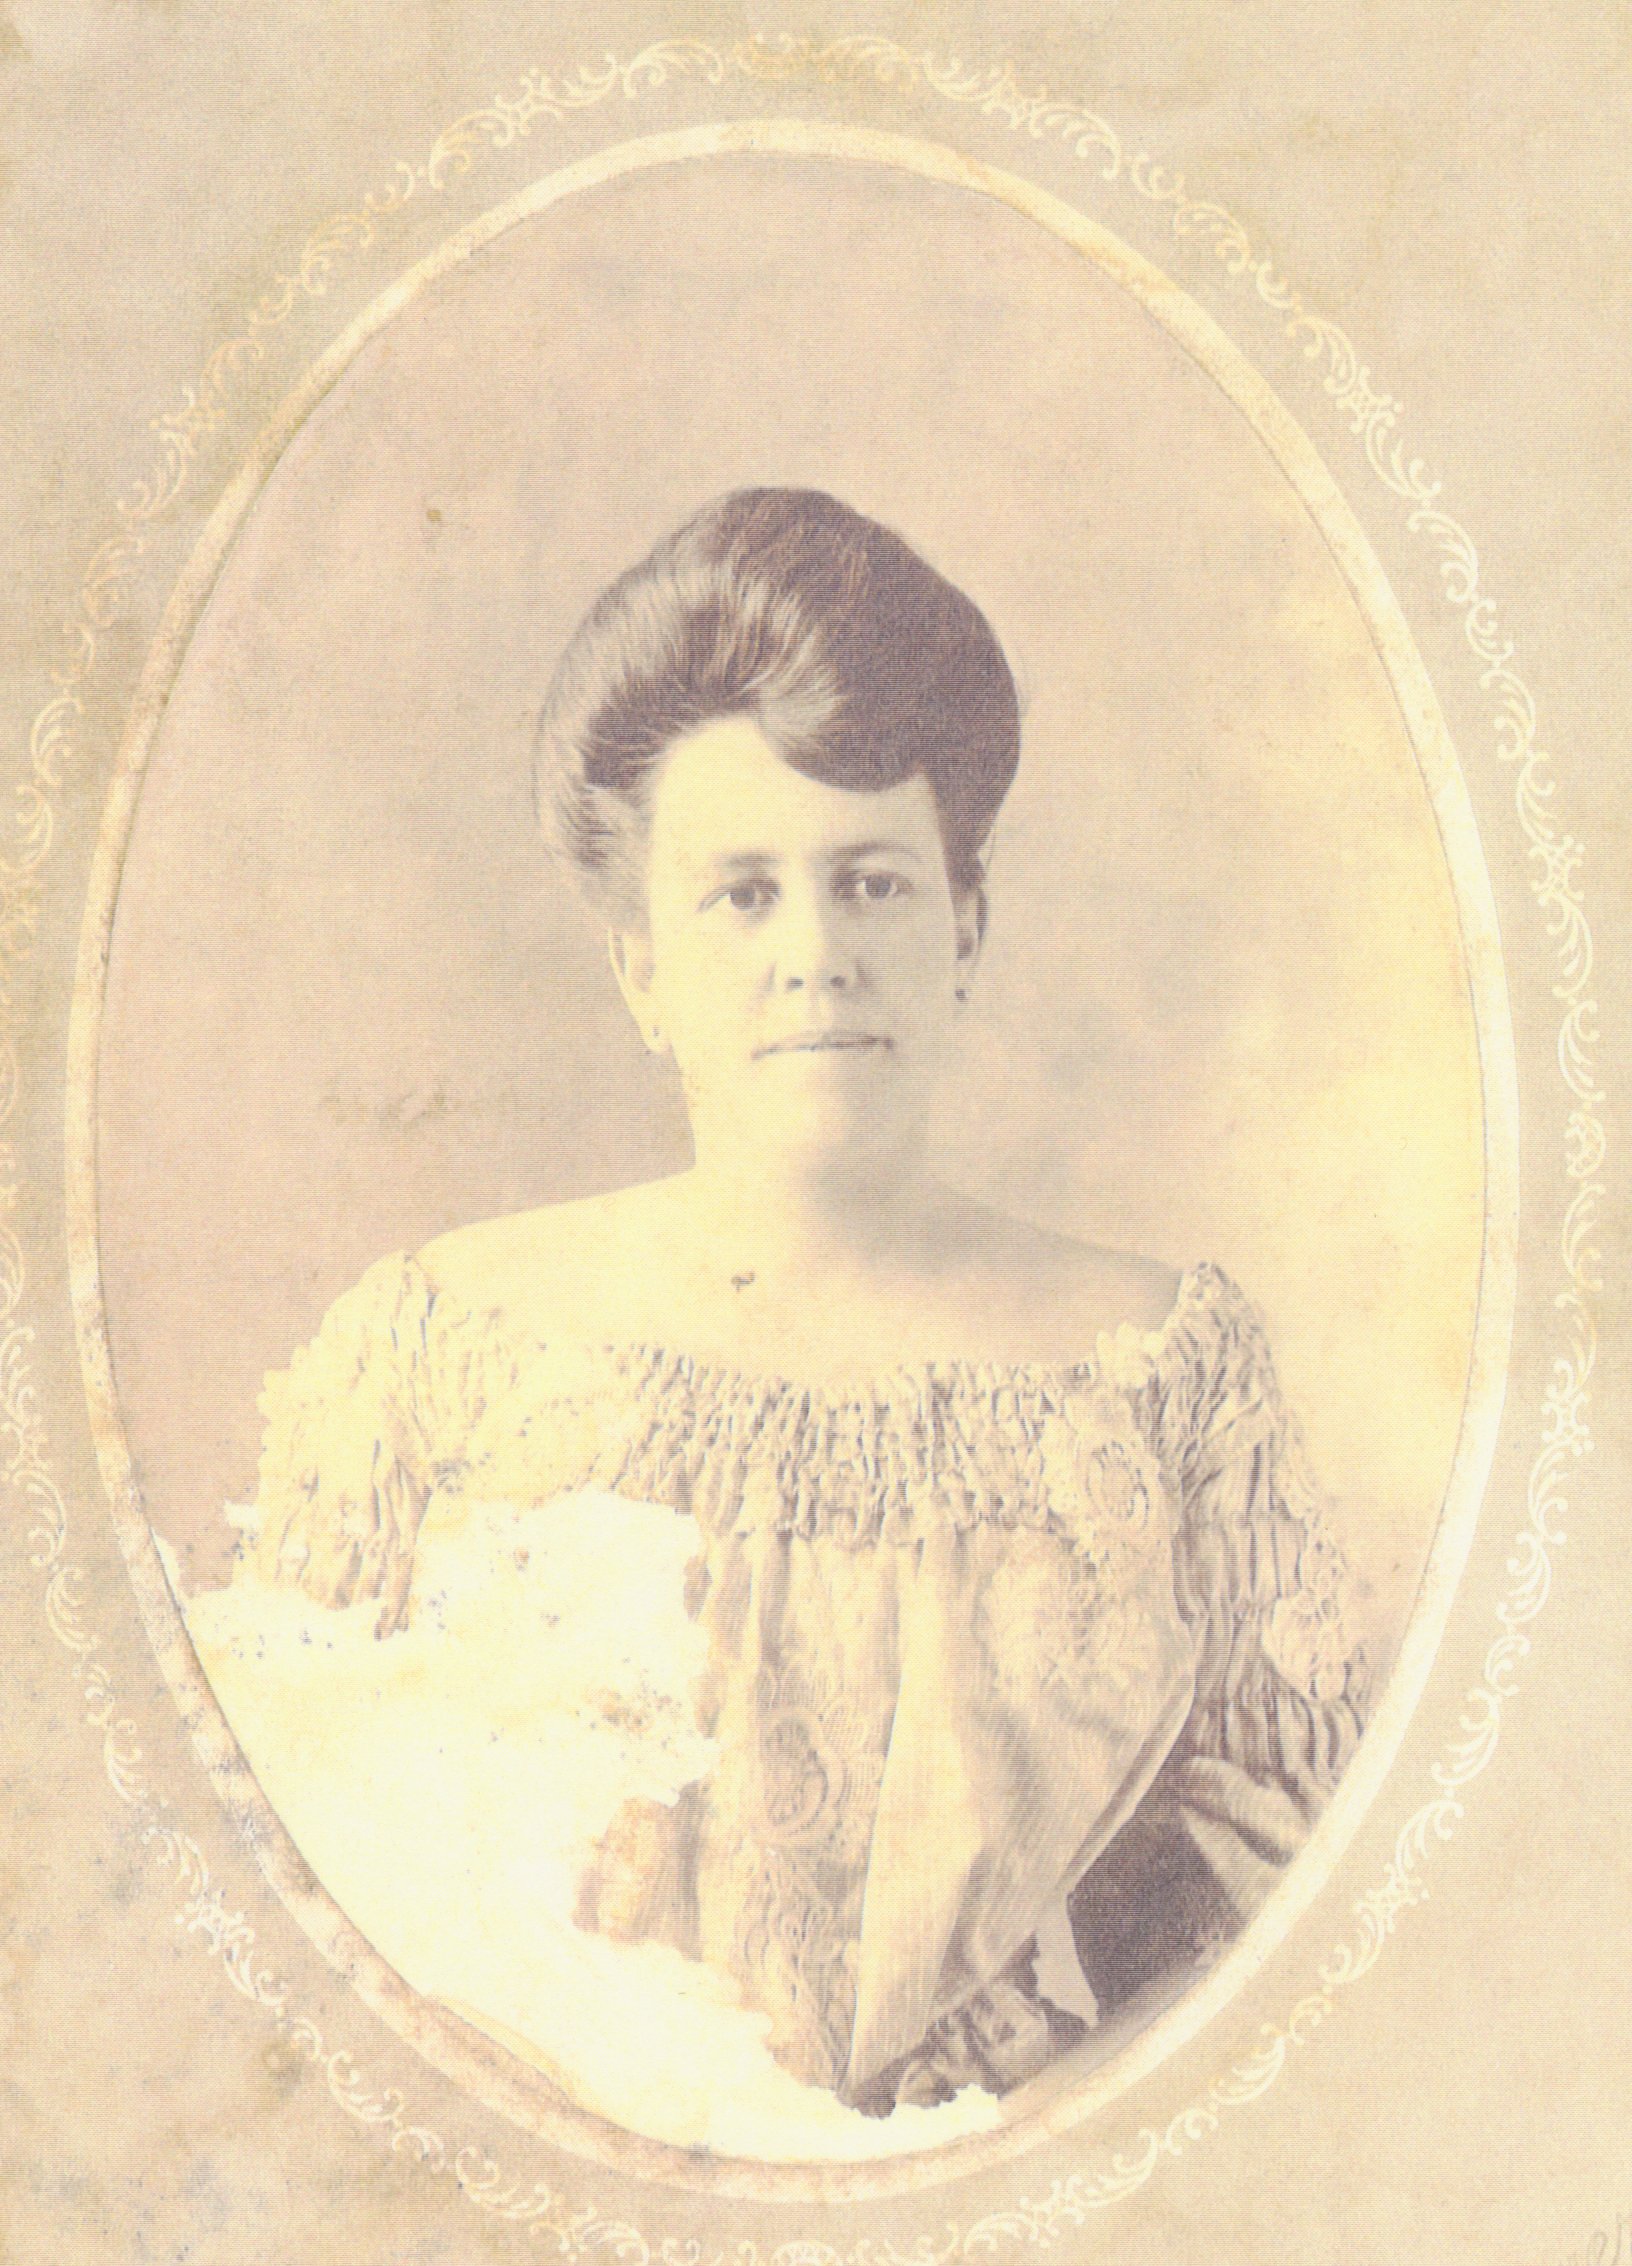 Francisca (Luján) Le Breton (1876-1966), daughter of José Mauro Luján